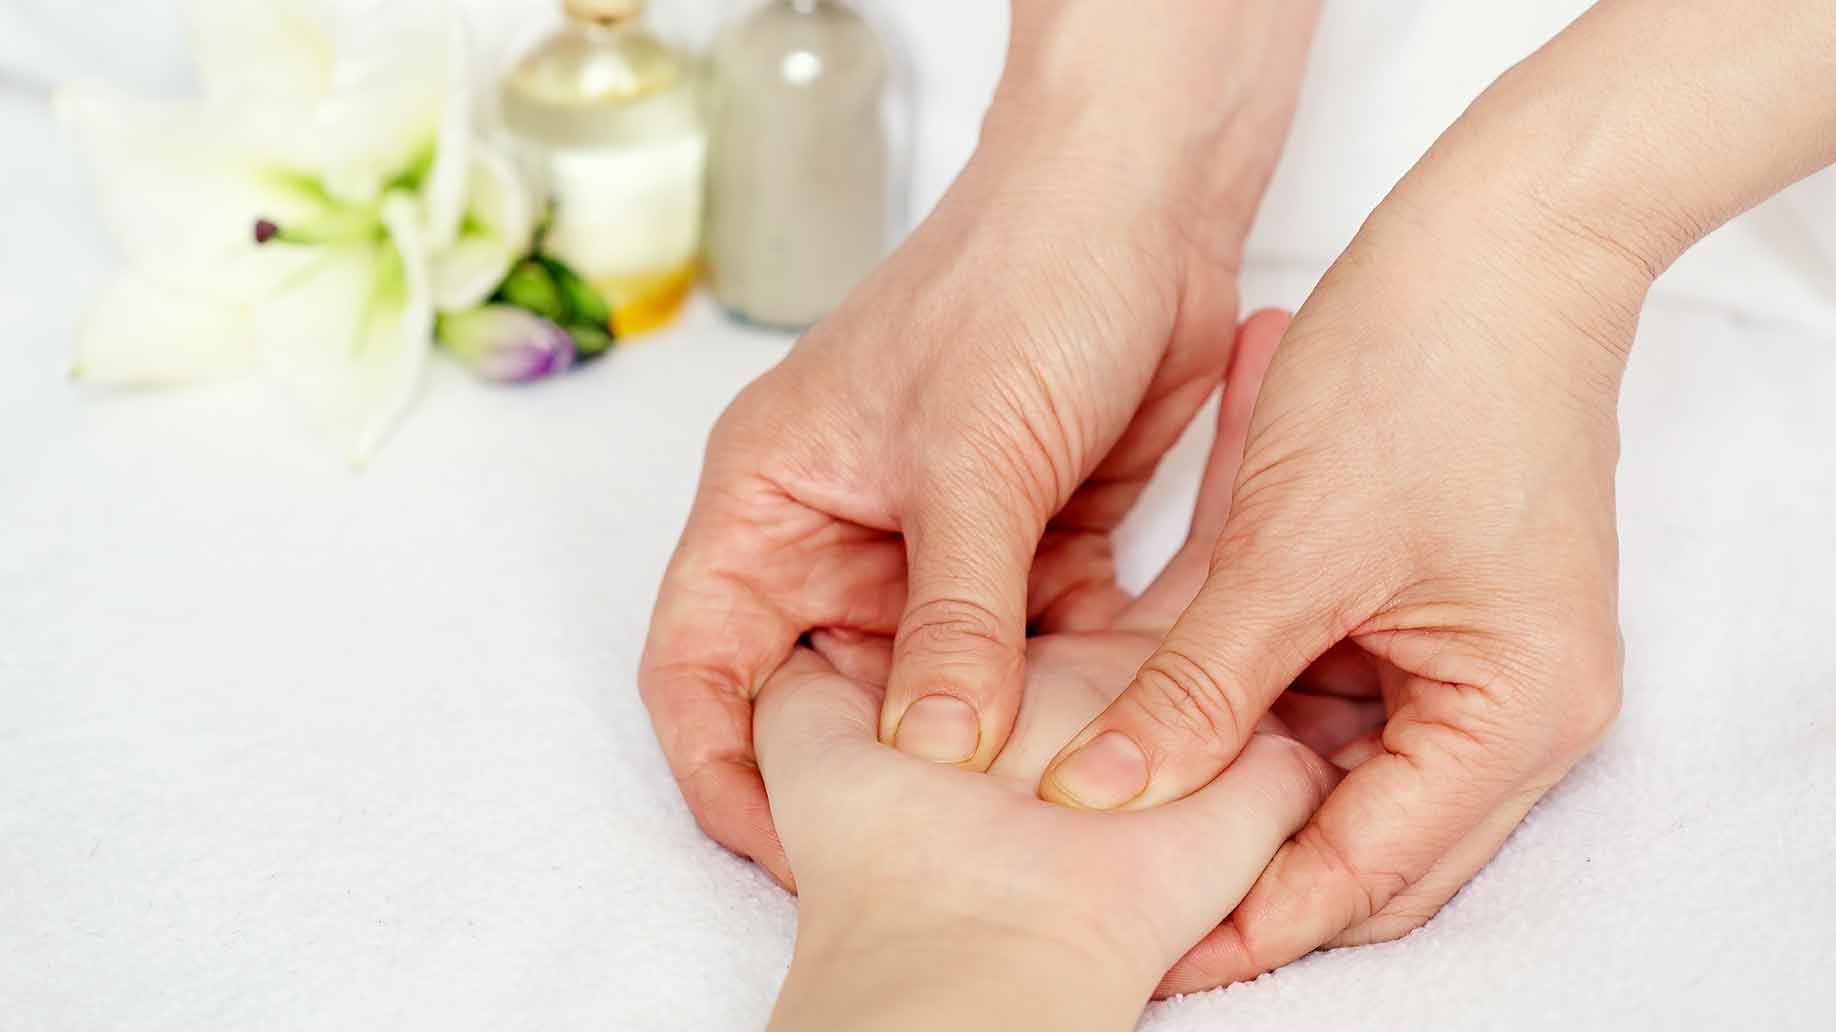 hand massage pressure points